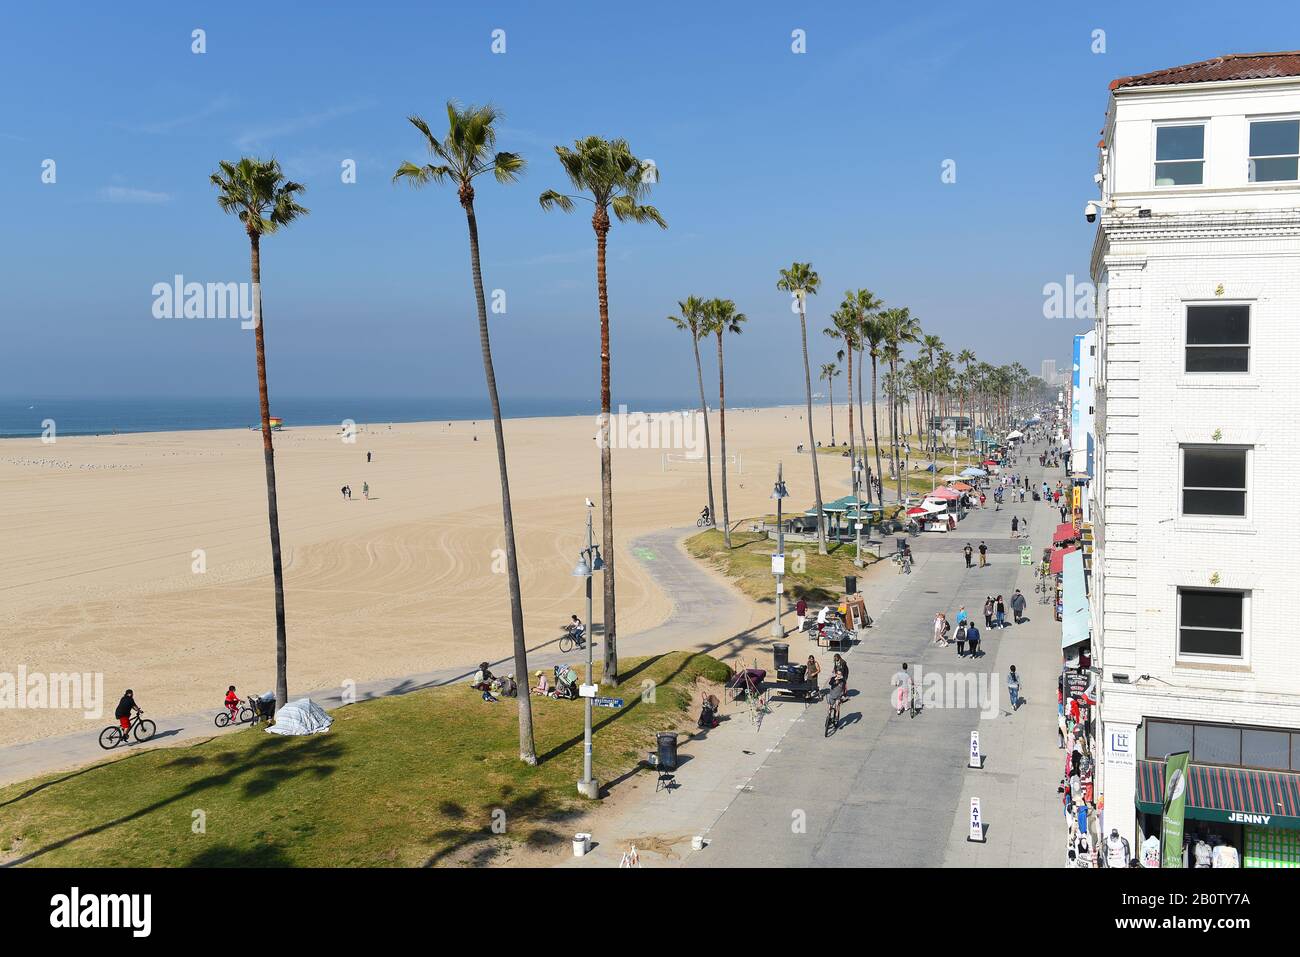 Venise, CALIFORNIE - 17 FÉVRIER 2020: La promenade de Venice Beach avec l'océan et le sable regardant vers le nord vers Santa Monica. Banque D'Images